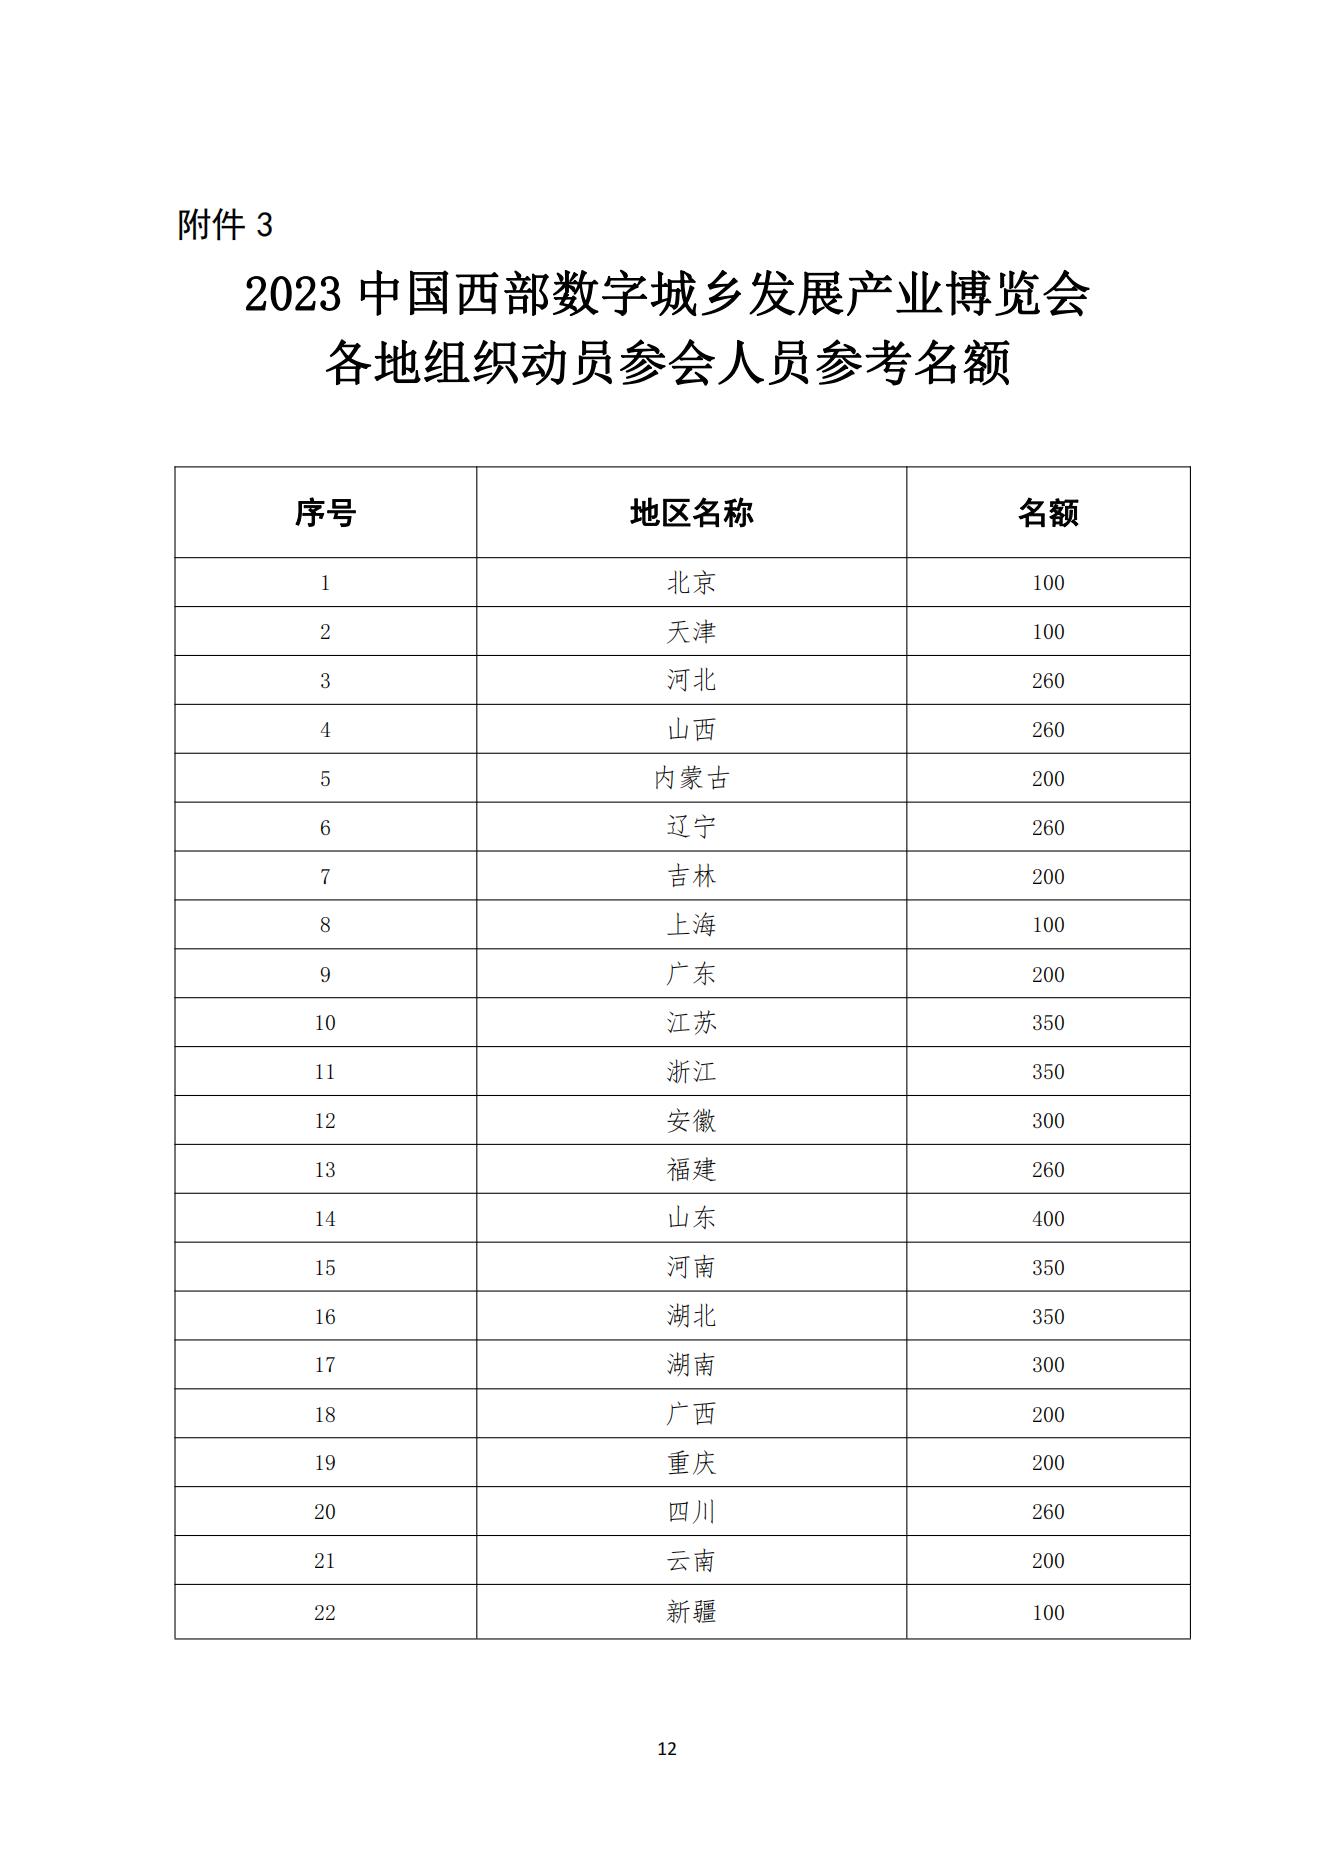 中国市政工程协会关于举办2023中国西部数字城乡发展产业博览会的通知11.9(1)_11.jpg